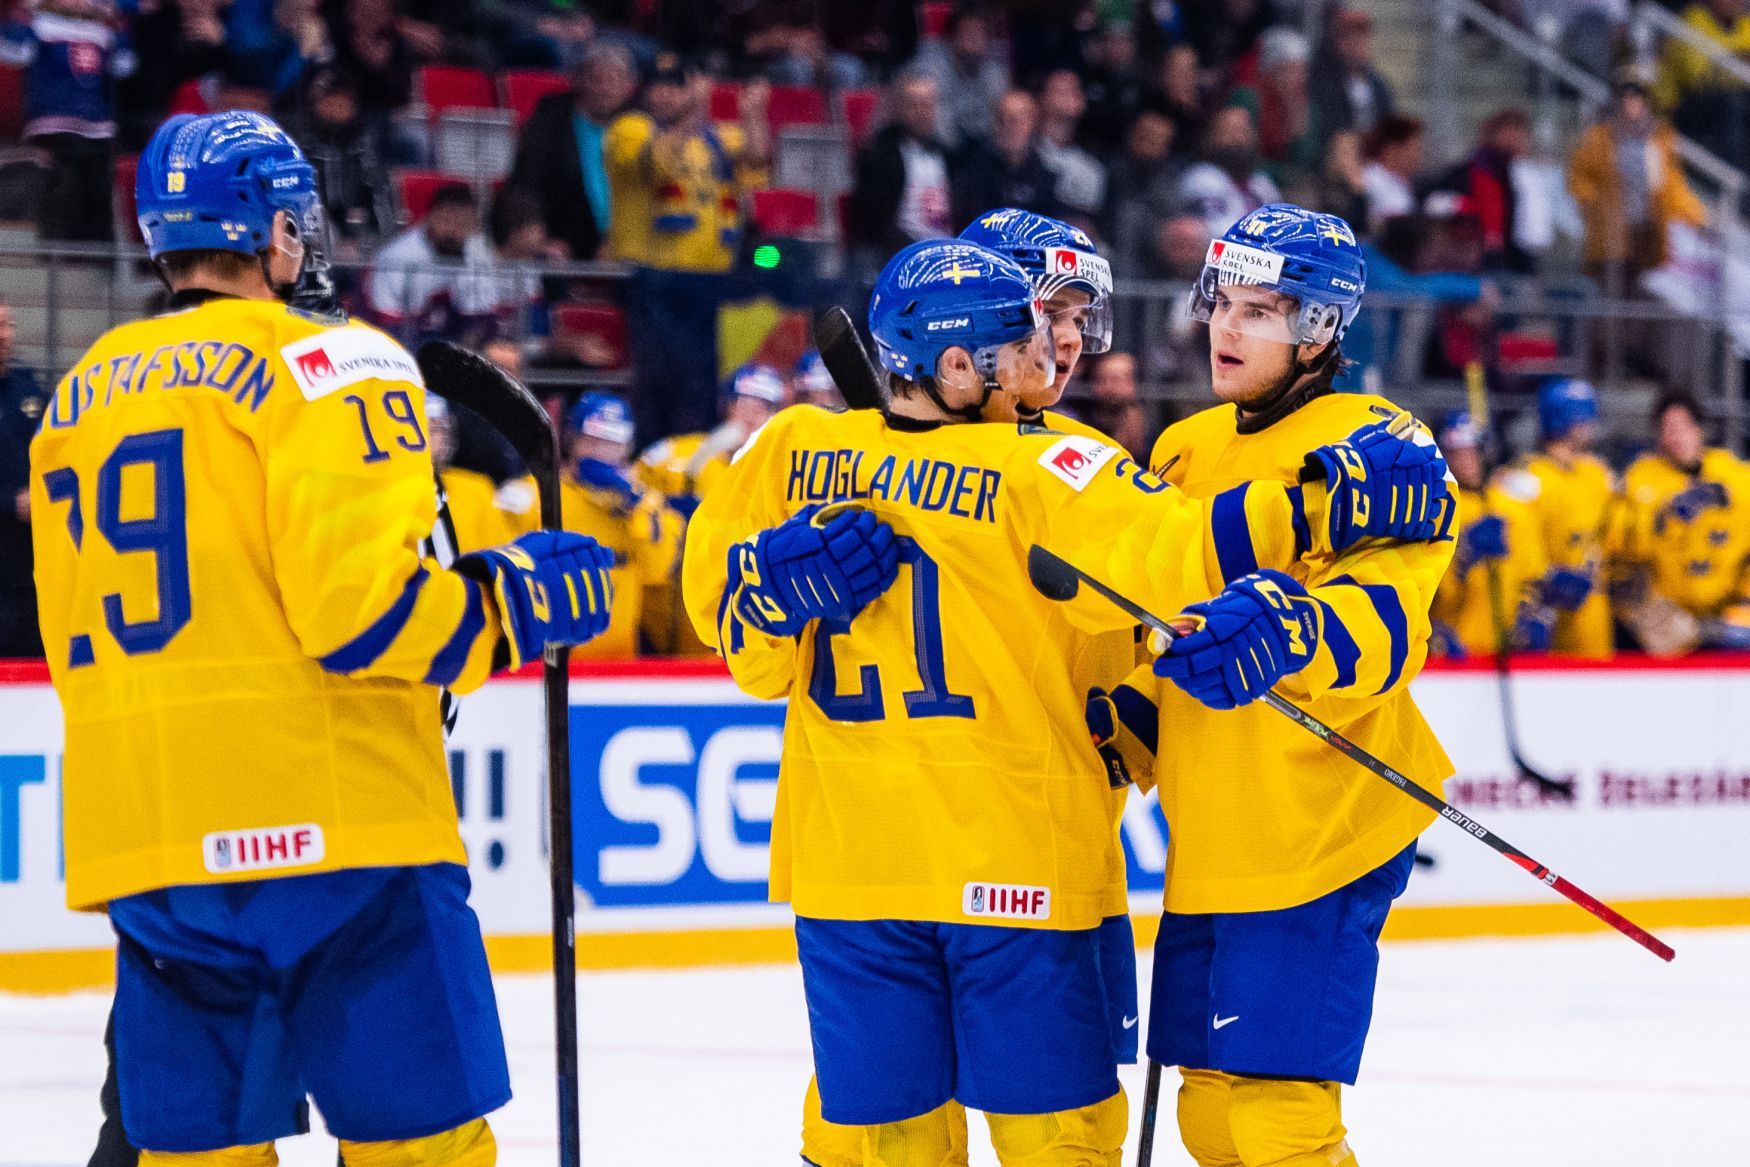 Hokejové MS juniorů 2019/20, švédská radost z gólu (vpravo Samuel Fagemo)